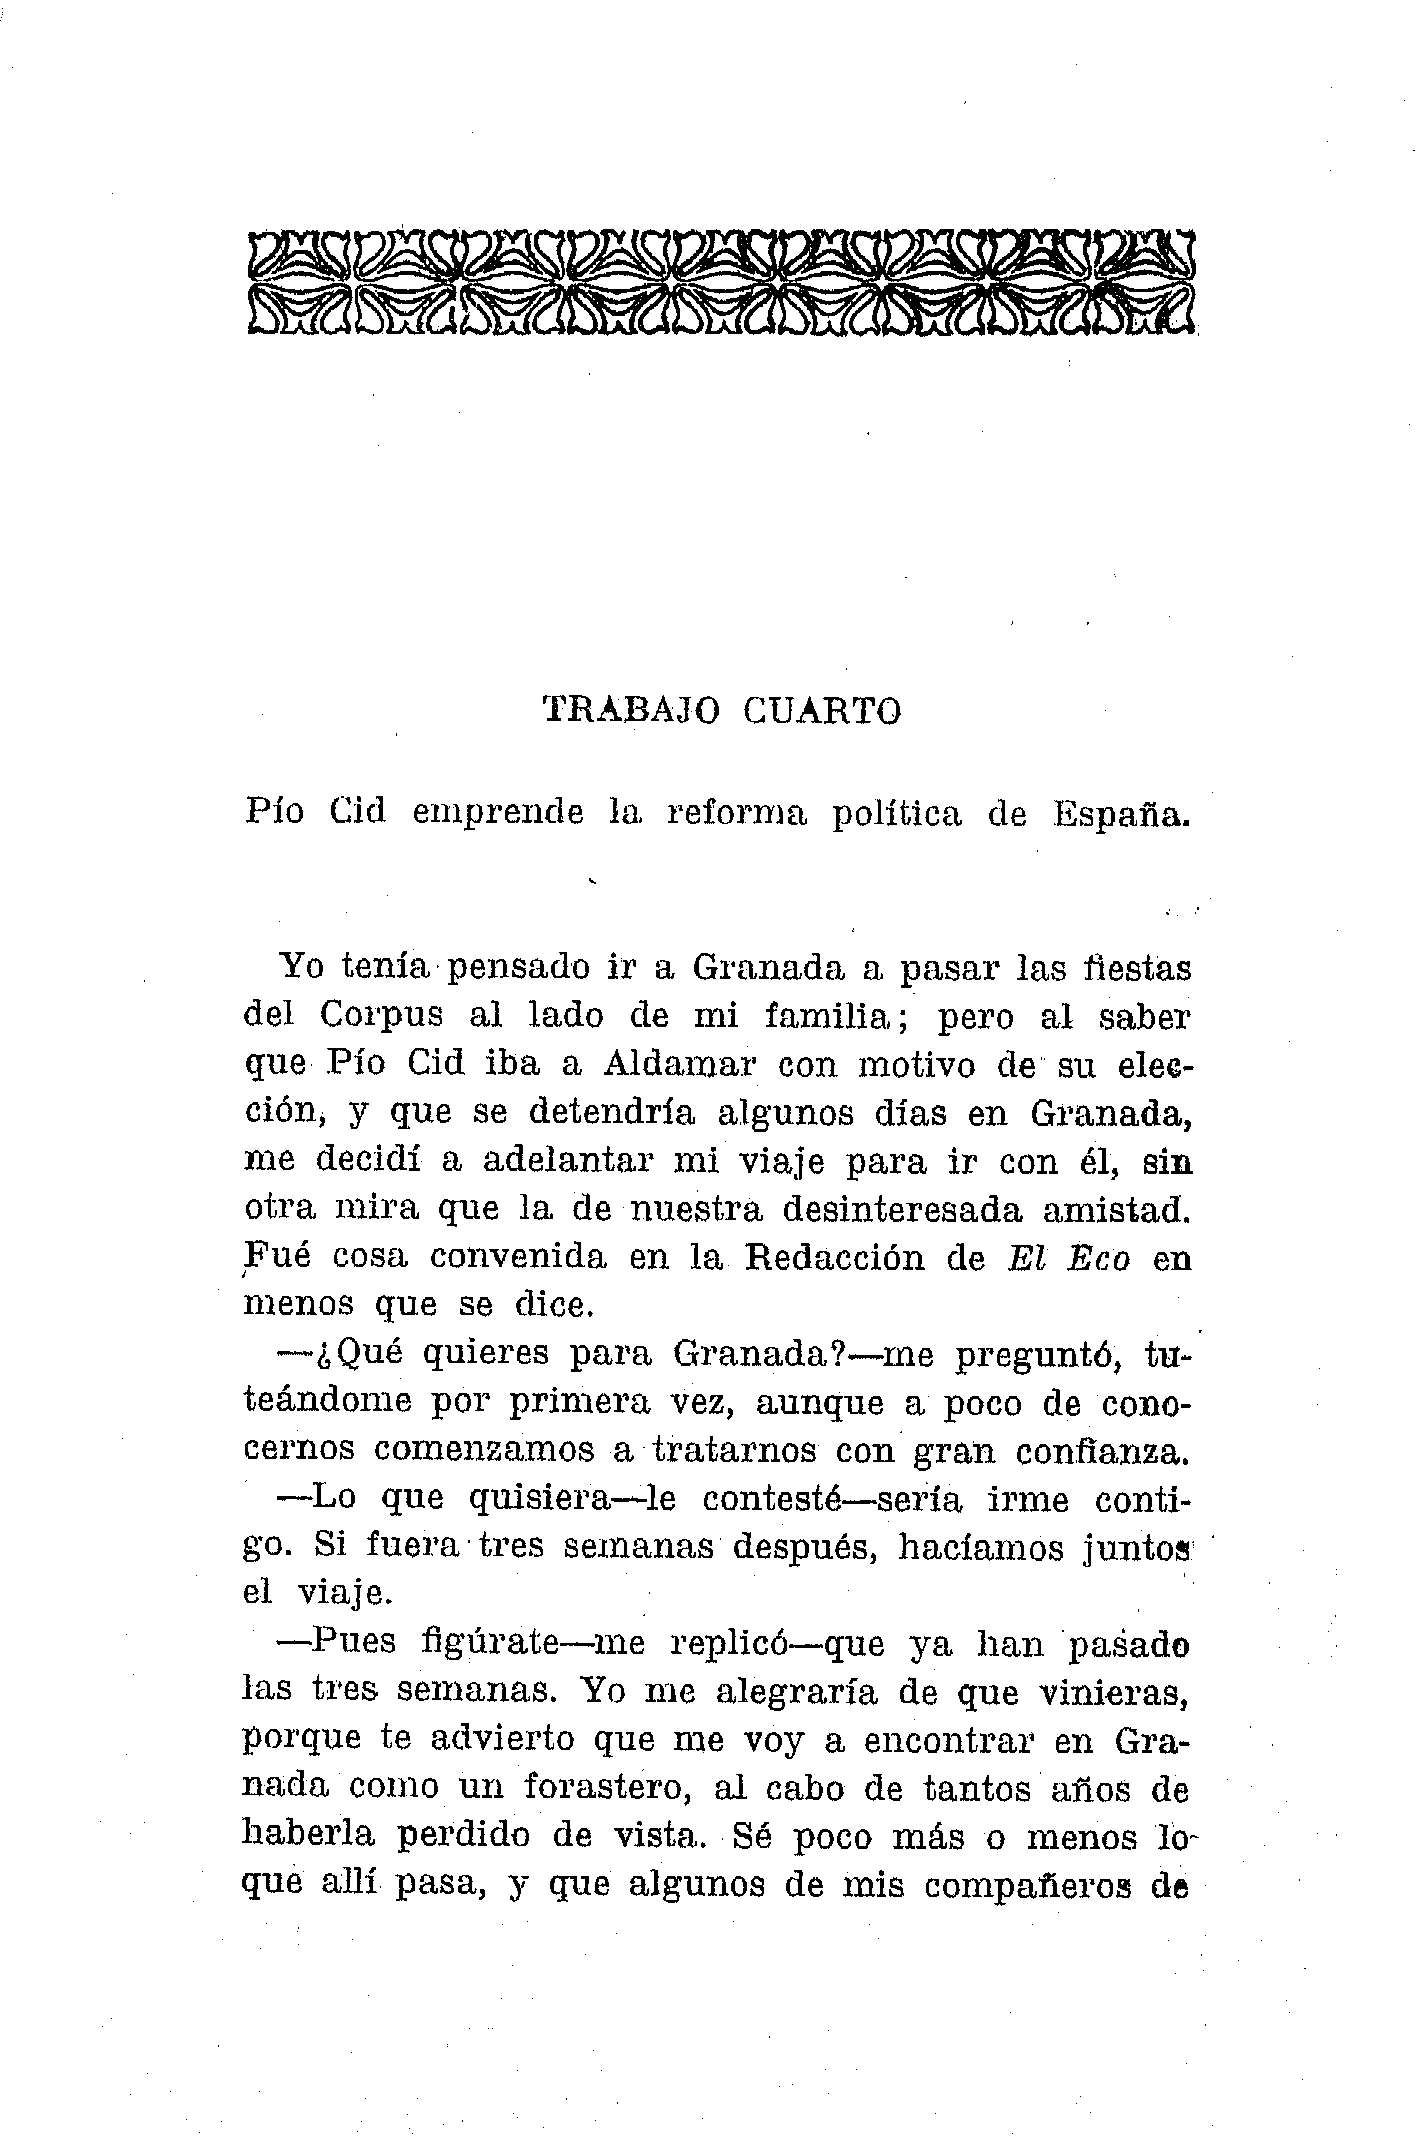 Trabajo Cuarto. Pío Cid emprende la reforma política de España